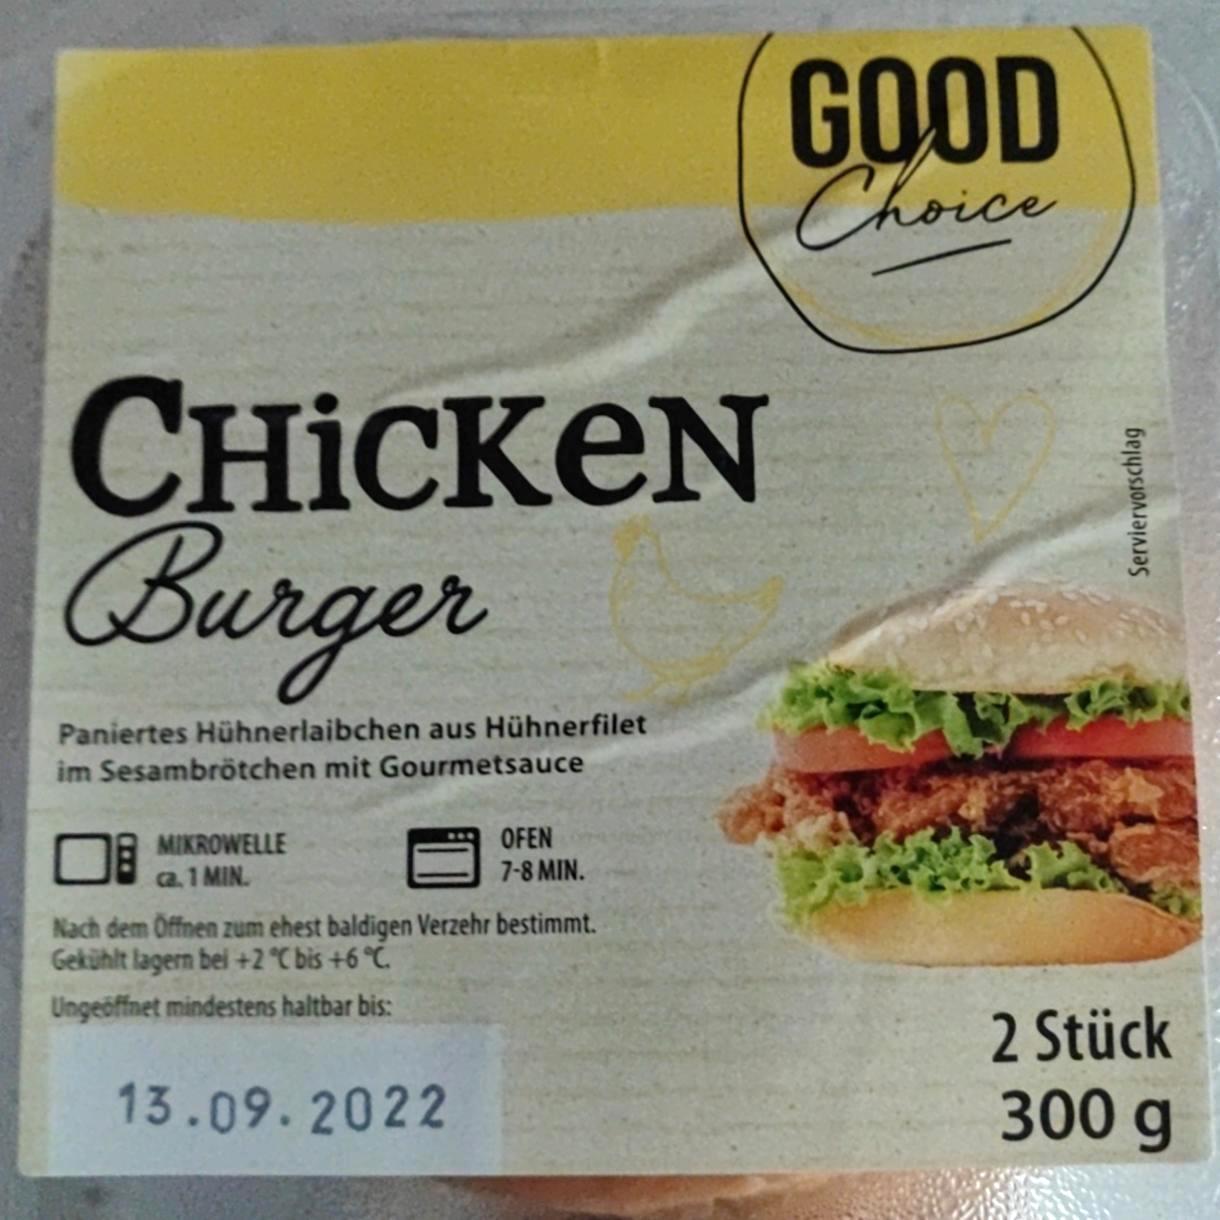 Képek - Chicken burger Good choice